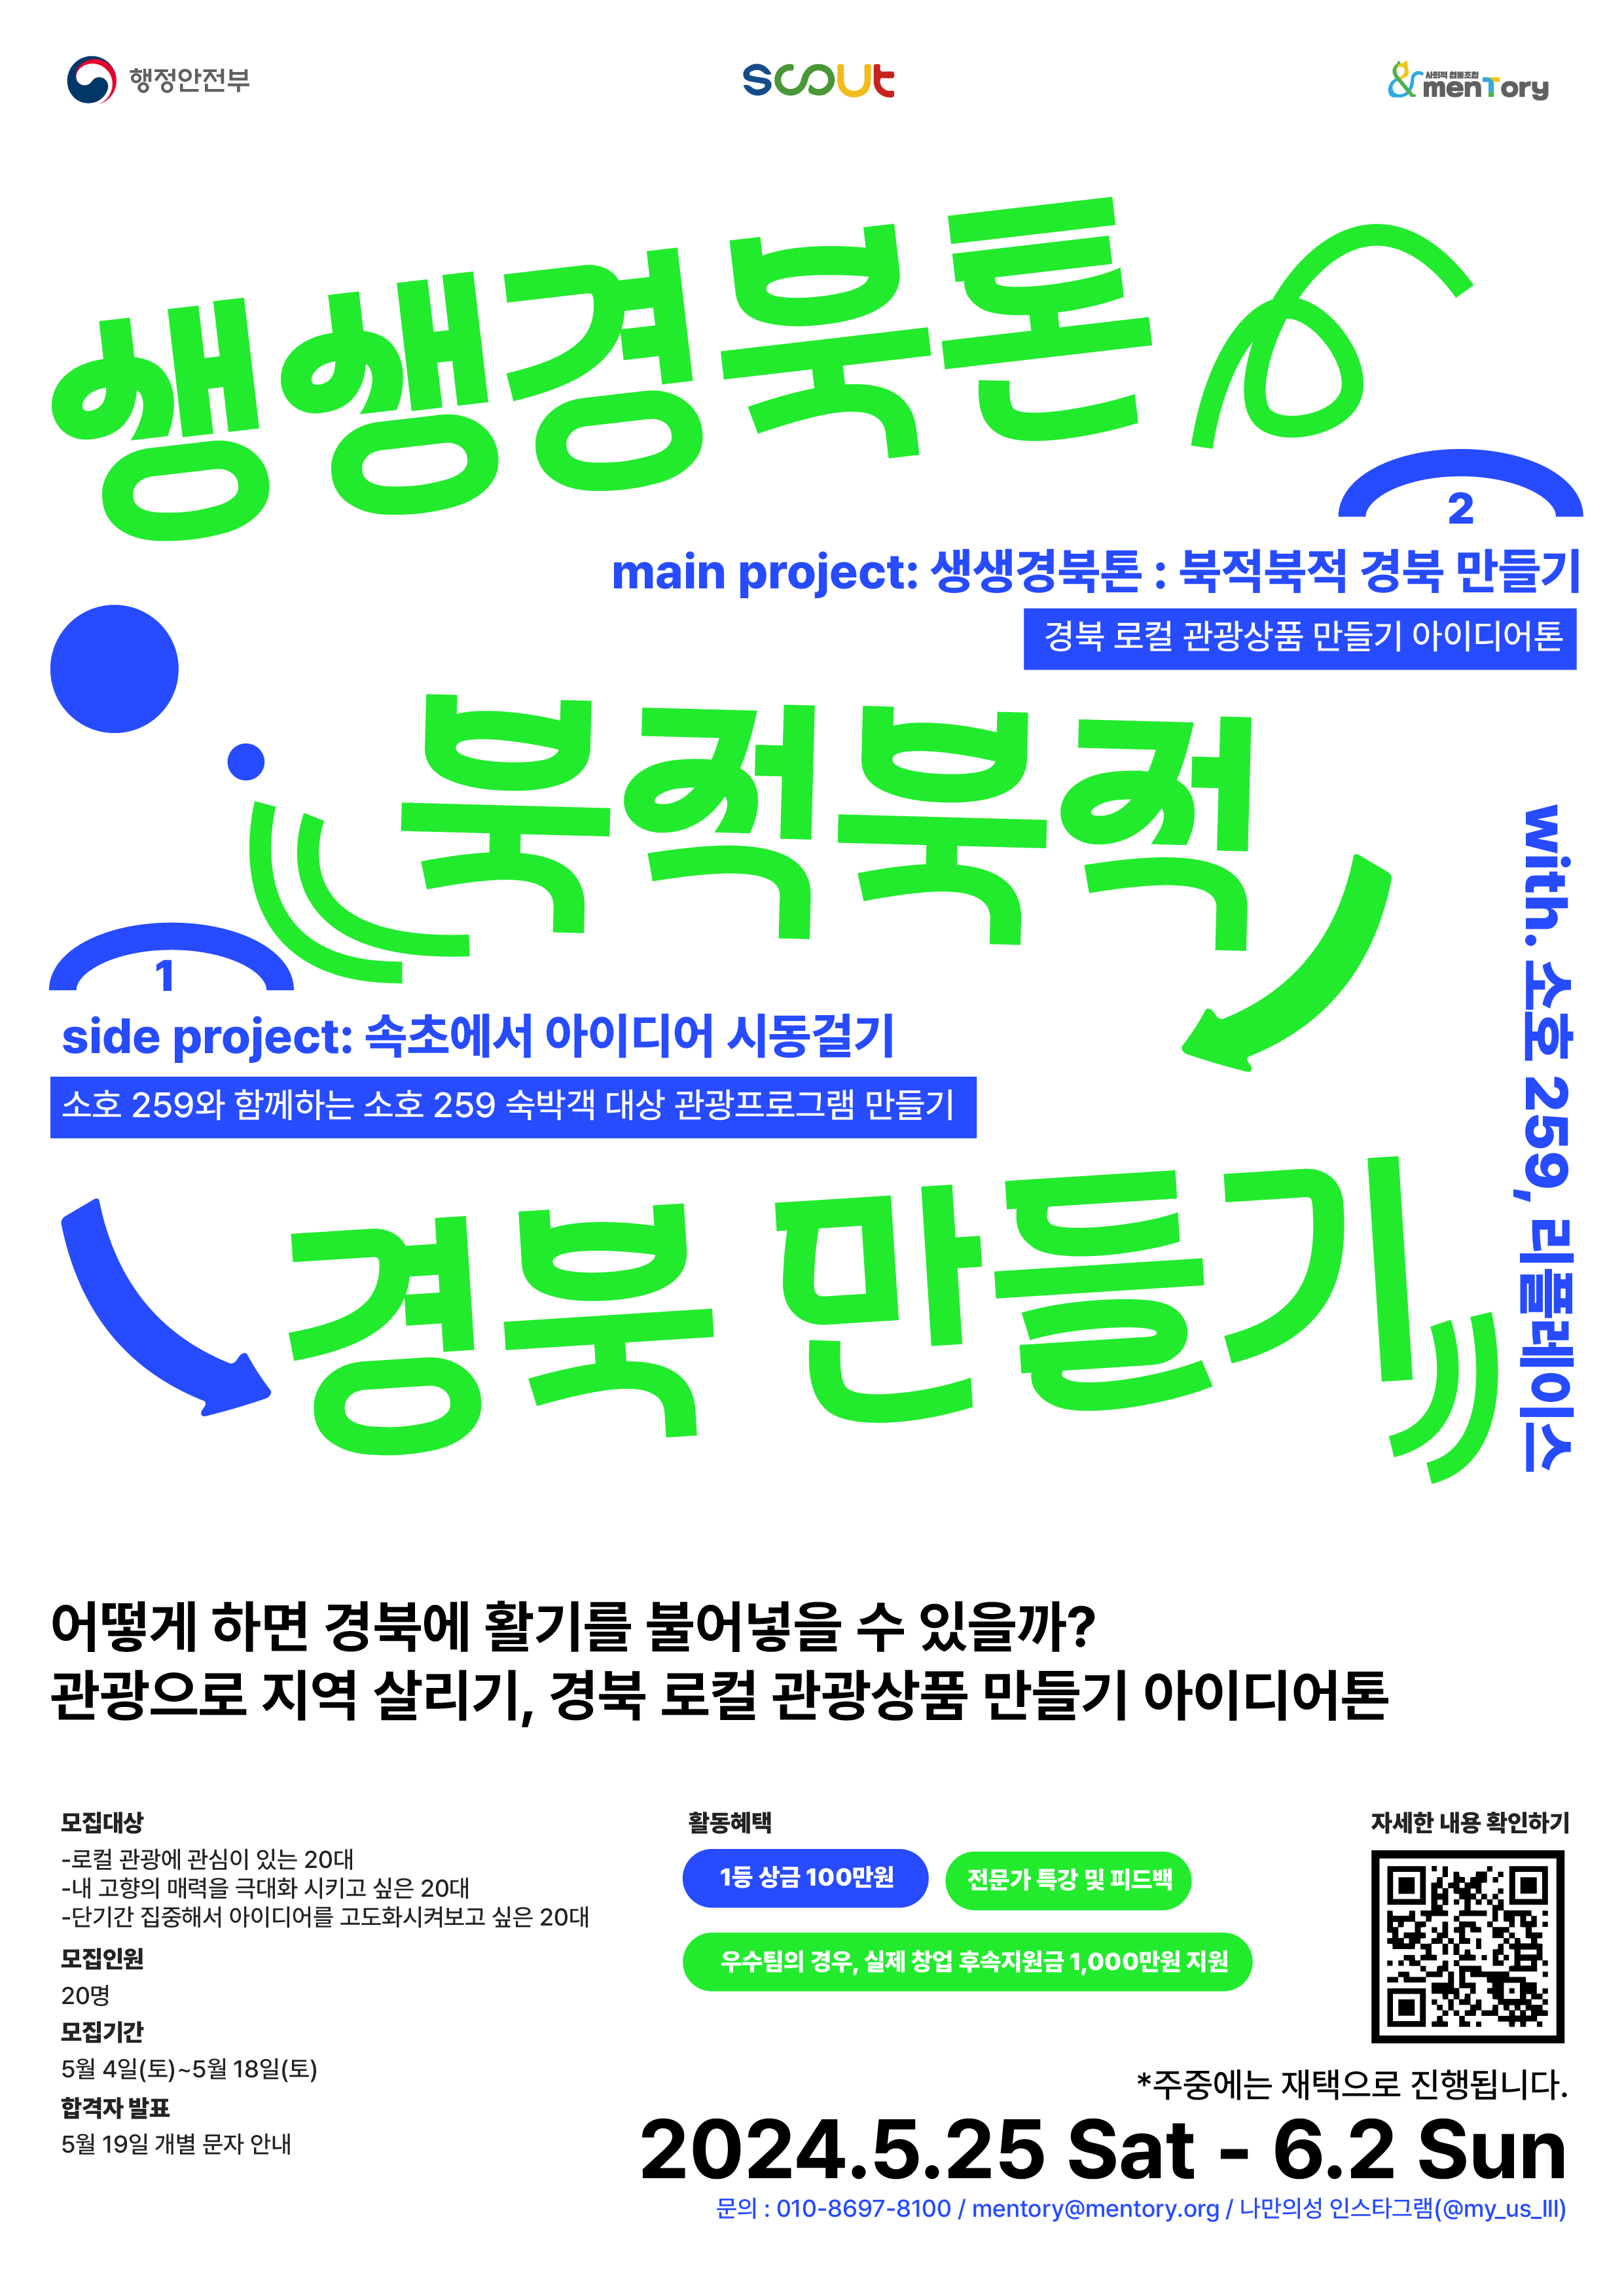 로컬 관광 아이디어톤 ‘생생경북톤: 북적북적 경북 만들기’ 참가자 모집